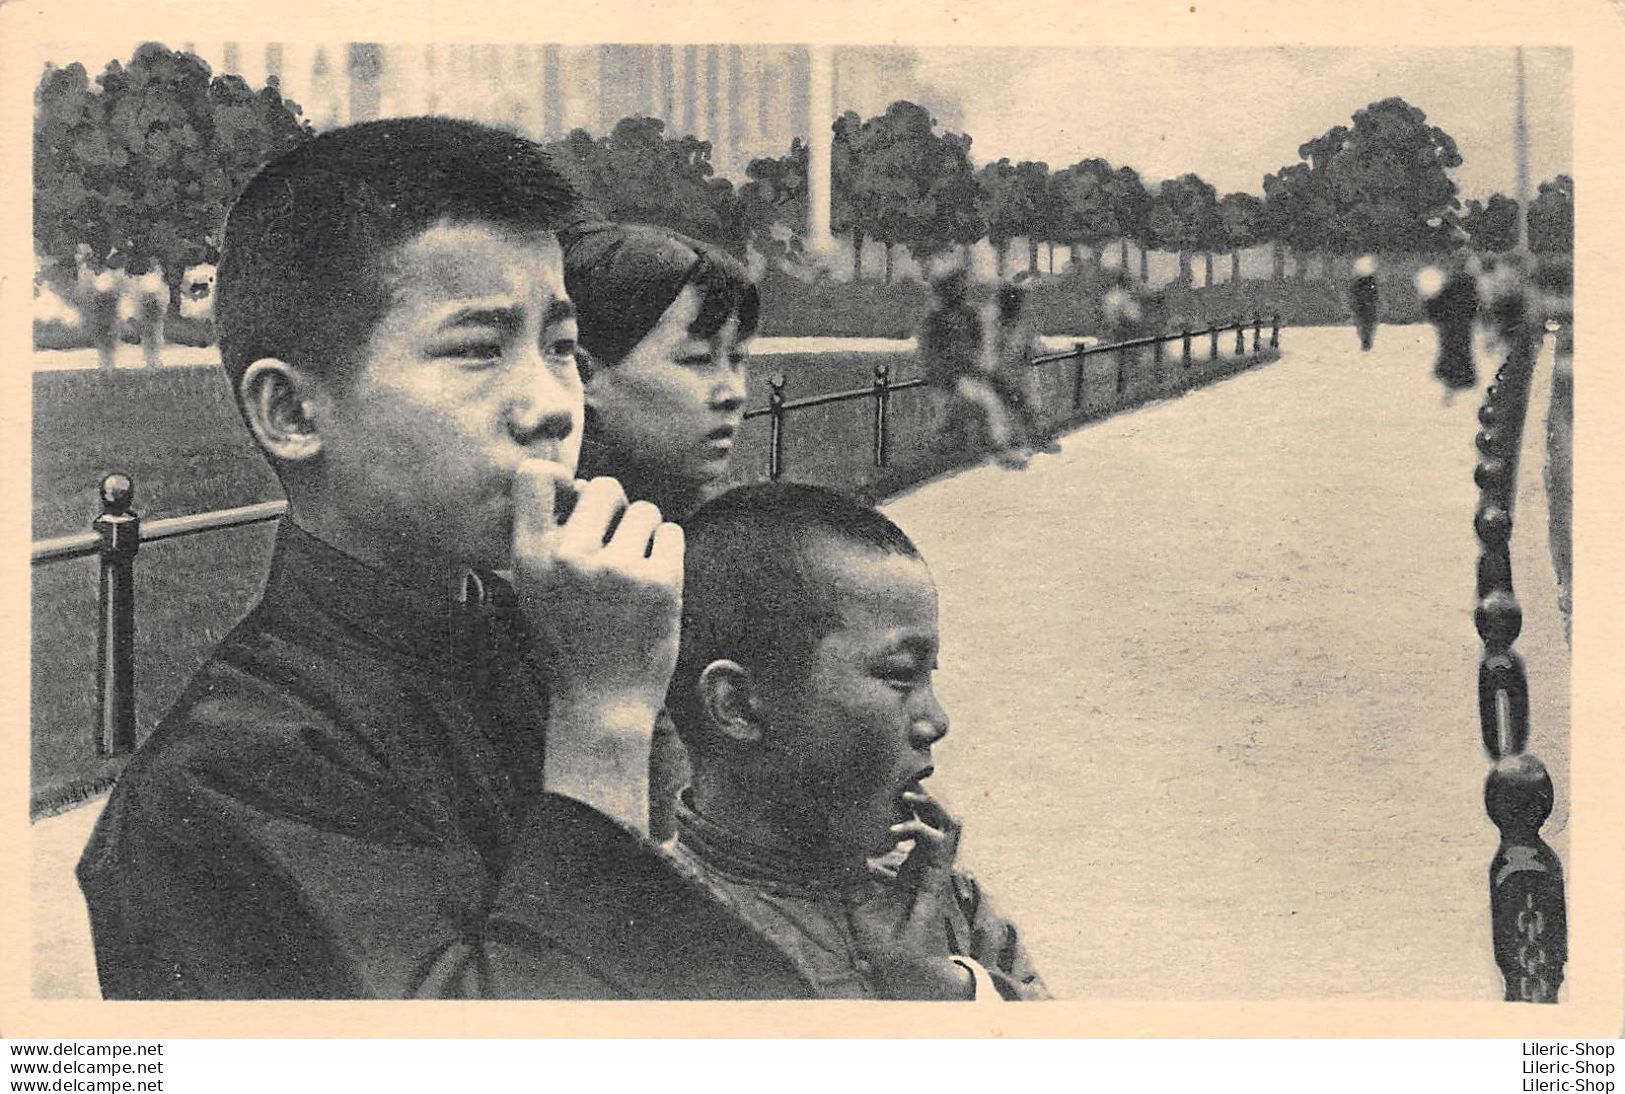 CHINE ◙. Devant Les Hautes Façades De La Chine Moderne, Ces Jeunes Chinois Anxieux Attendent... - China